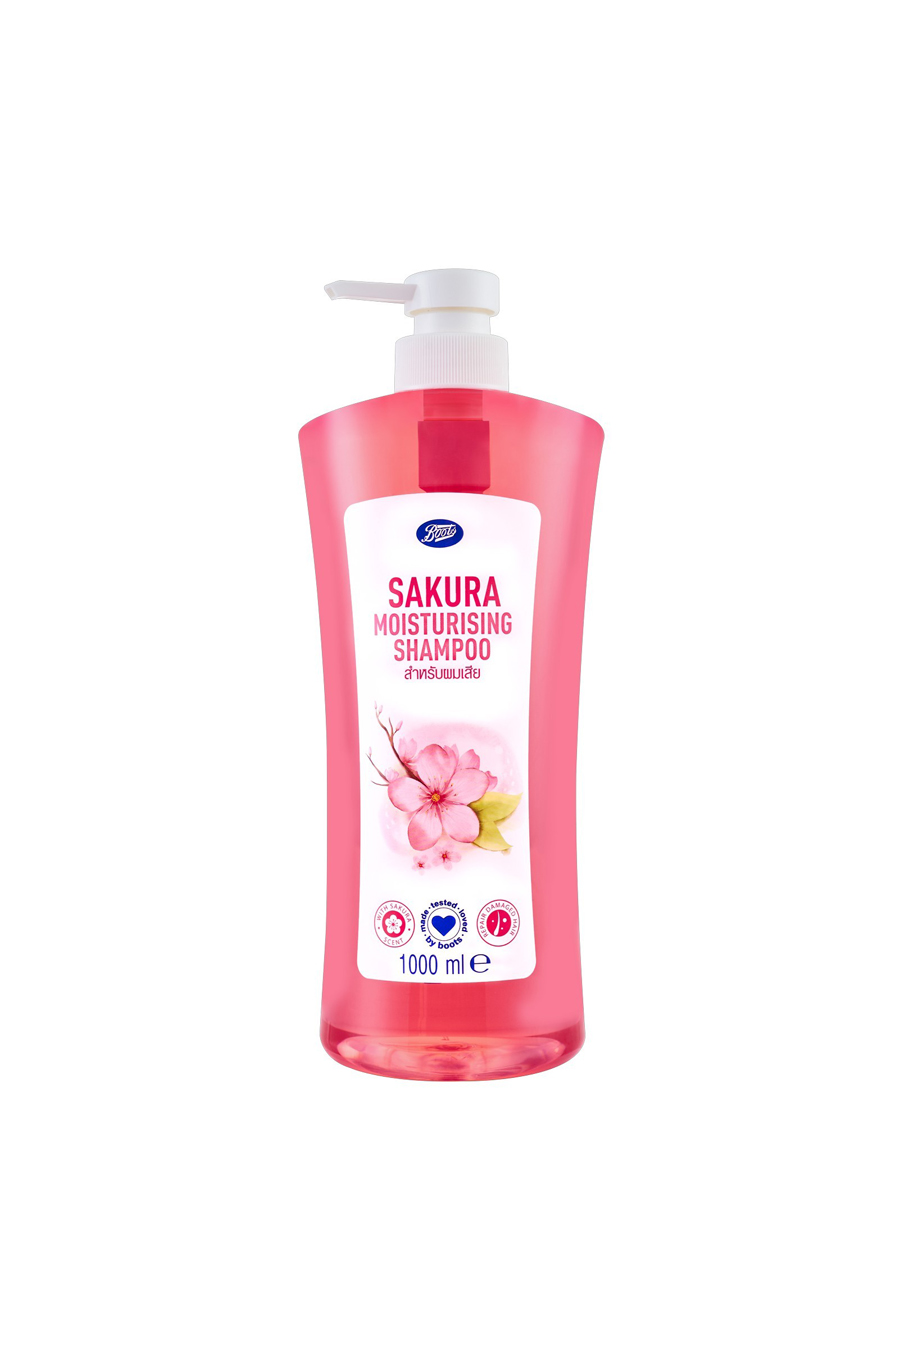 Boots Sakura Moisturising Shampoo